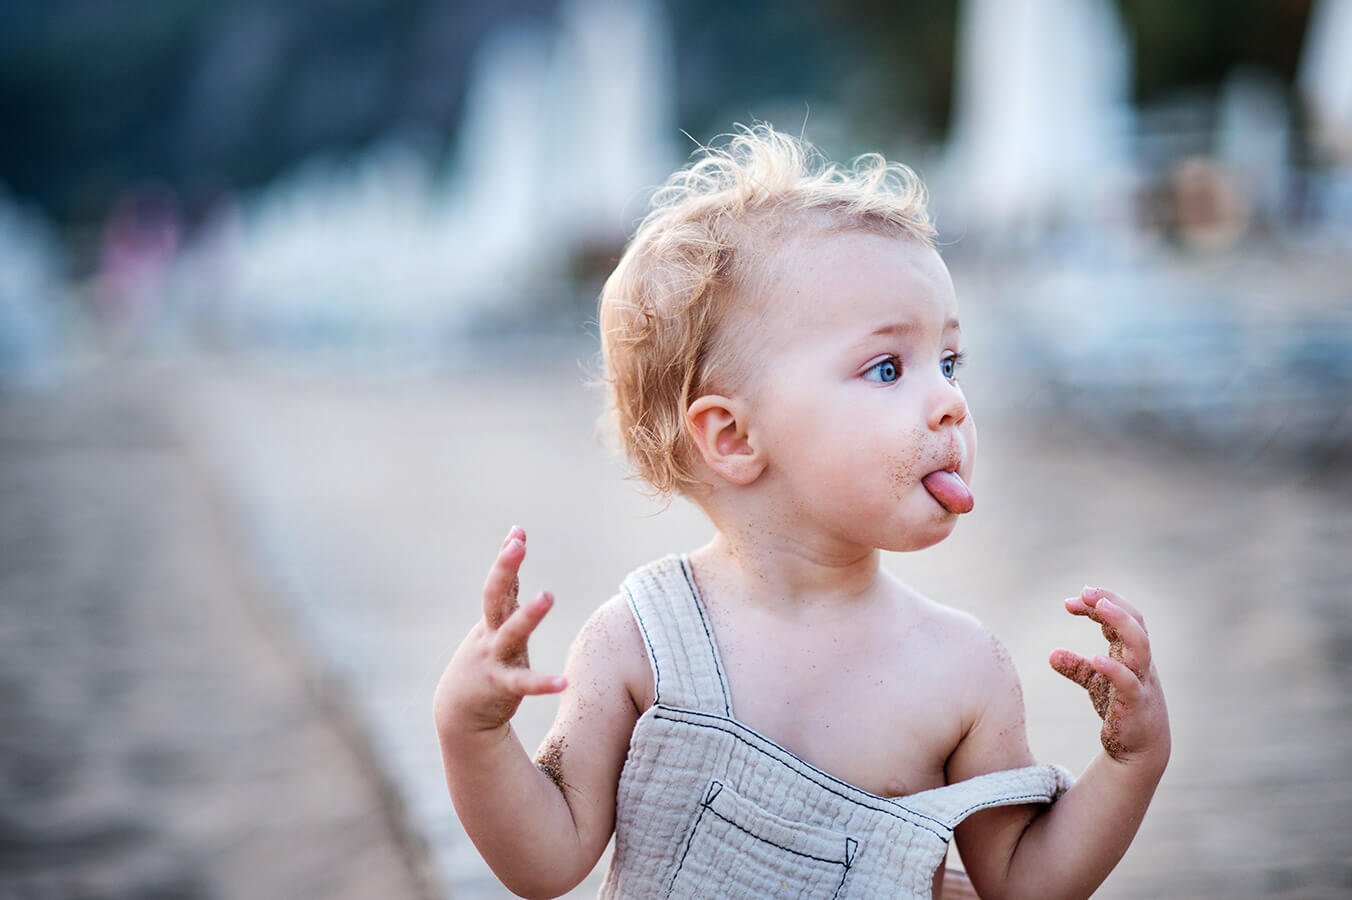 Biały nalot na języku: Co oznacza u niemowlaka, a co u kobiety w ciąży?